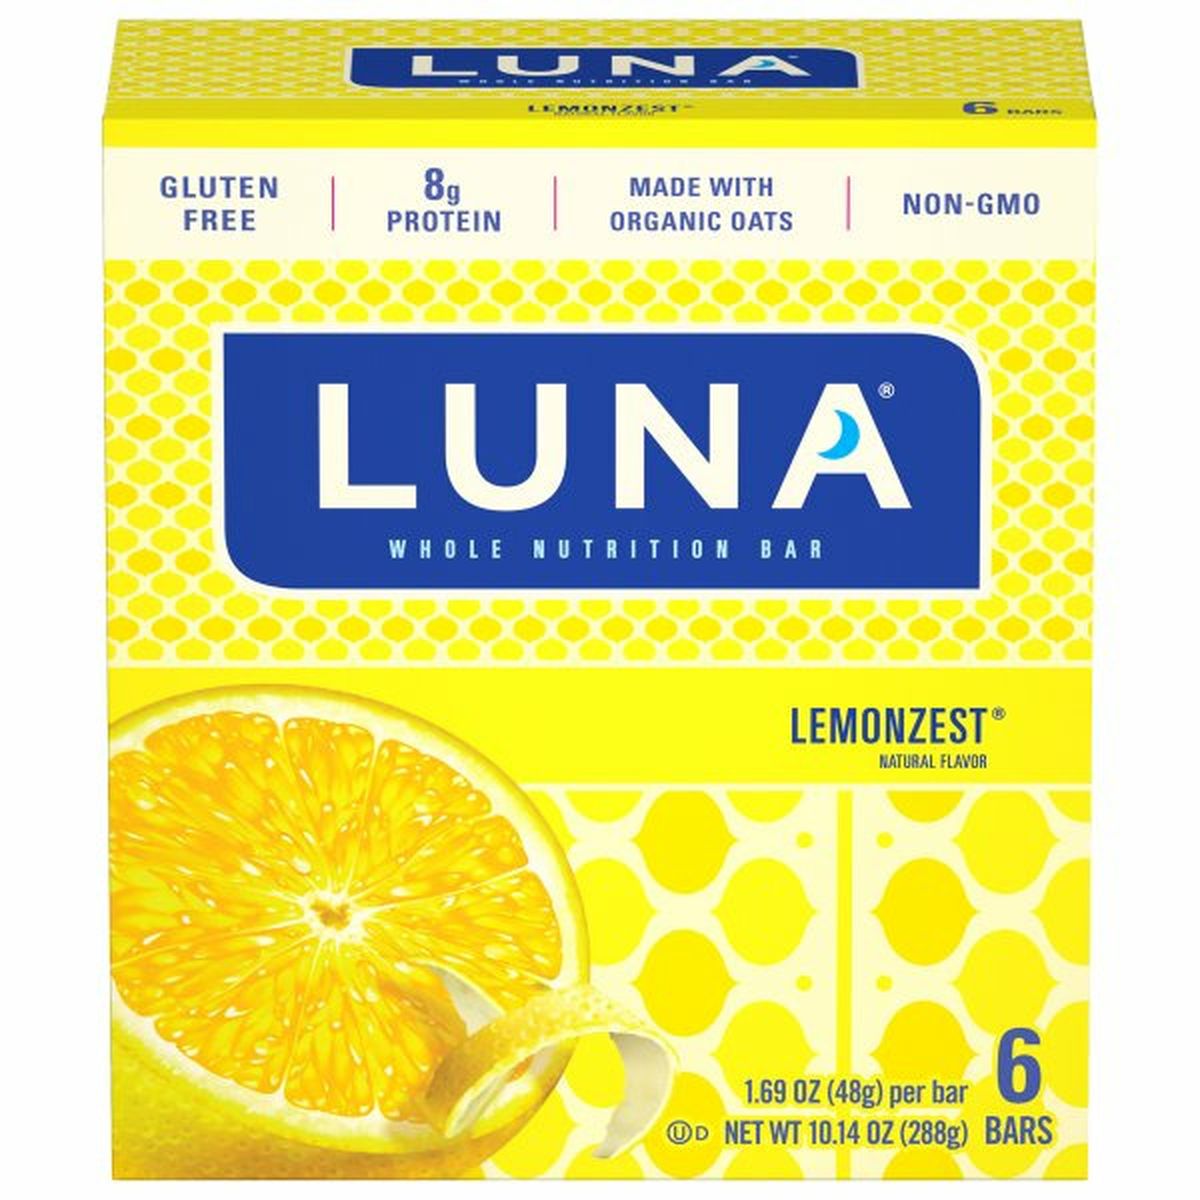 Calories in Luna Whole Nutrition Bar, Lemonzest